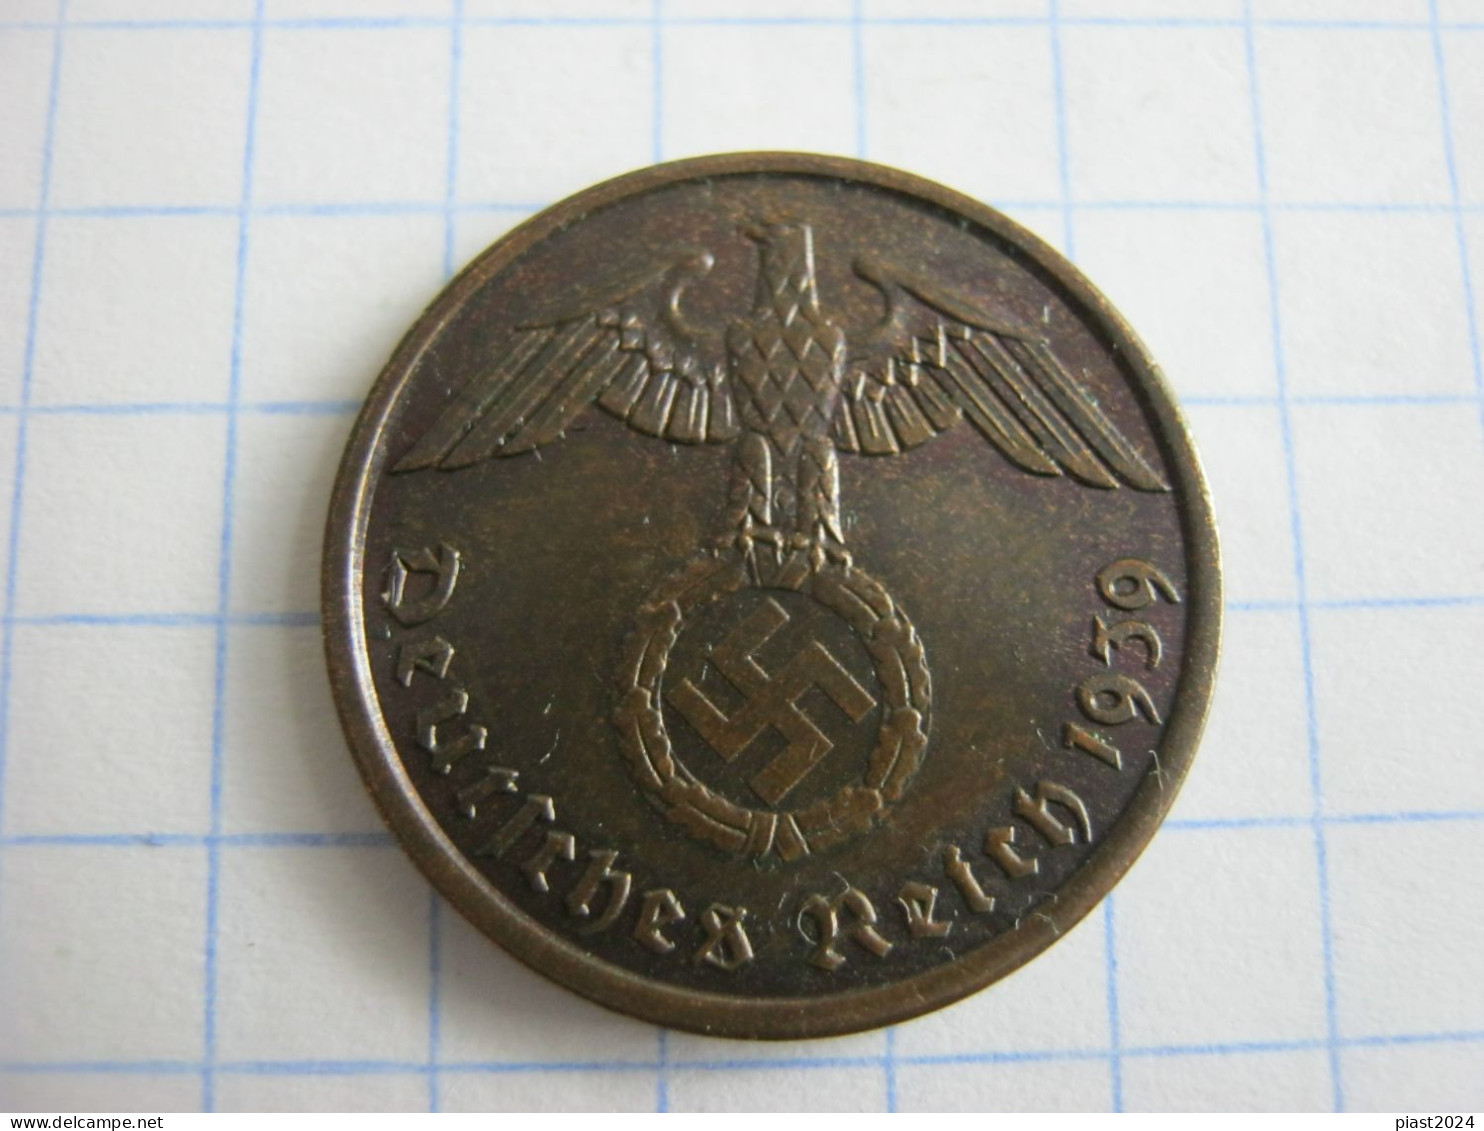 Germany 2 Reichspfennig 1939 A - 2 Reichspfennig